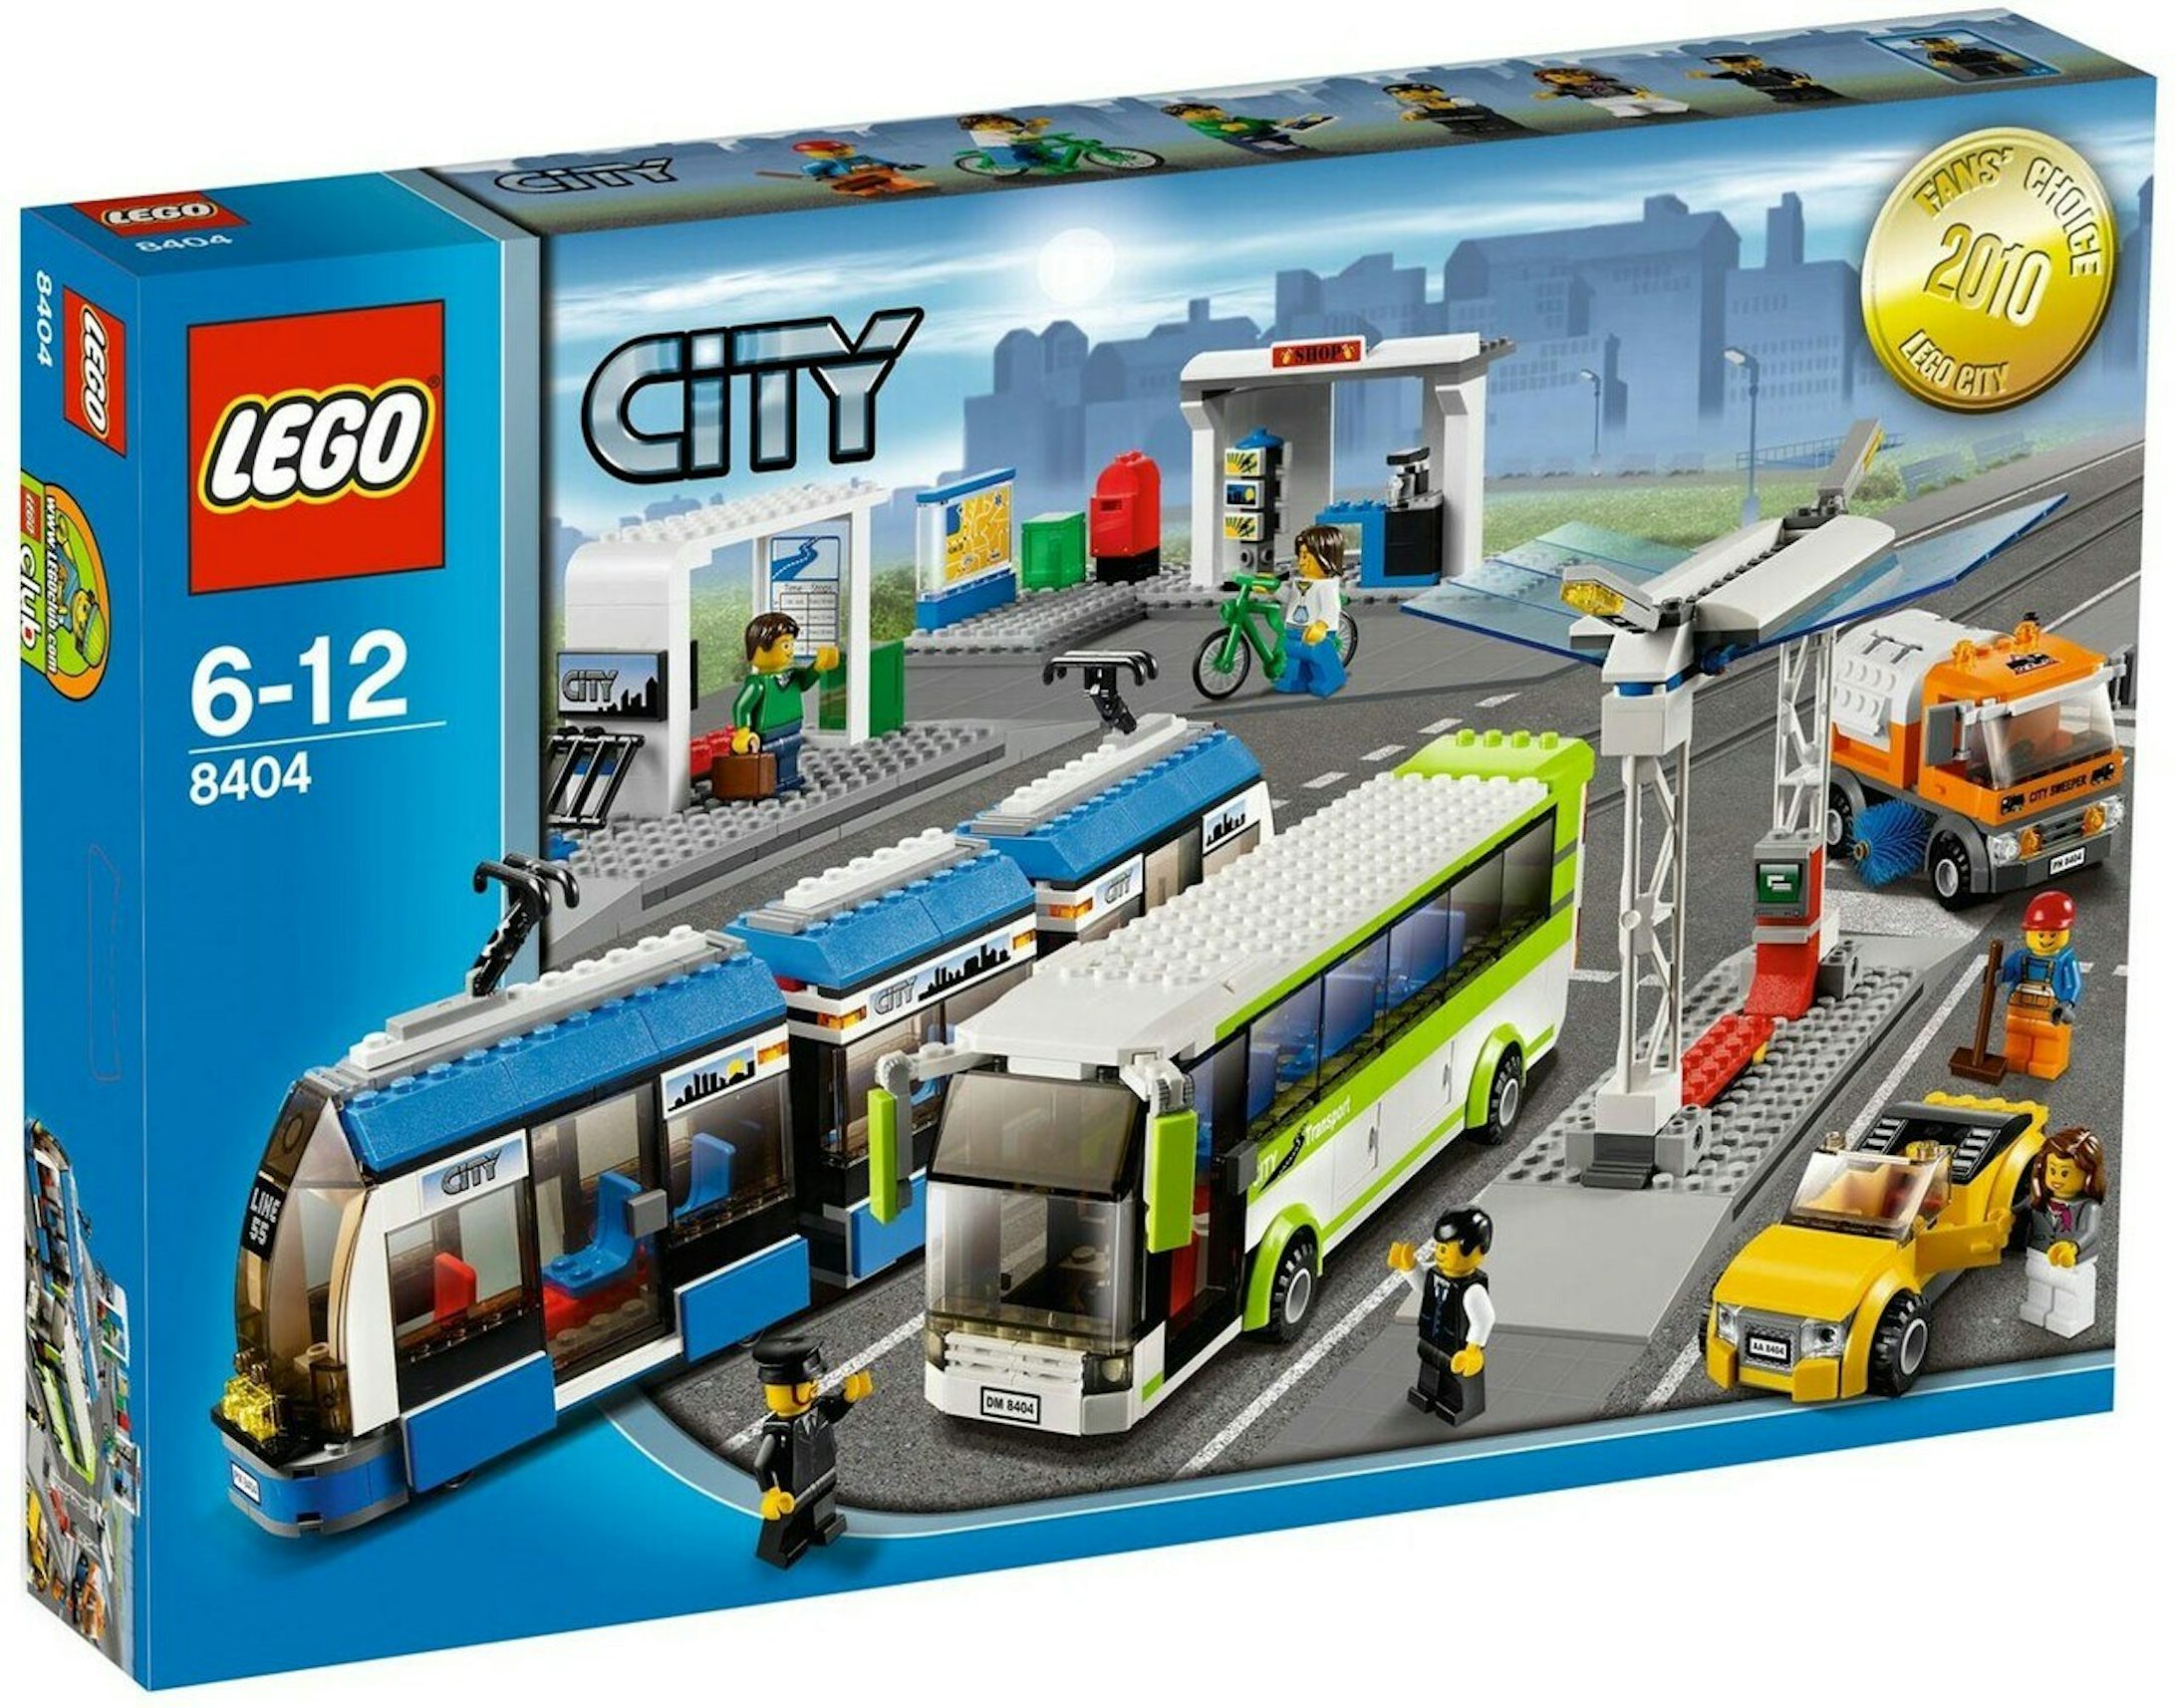 LEGO City Public Transportation Station Set 8404 - US